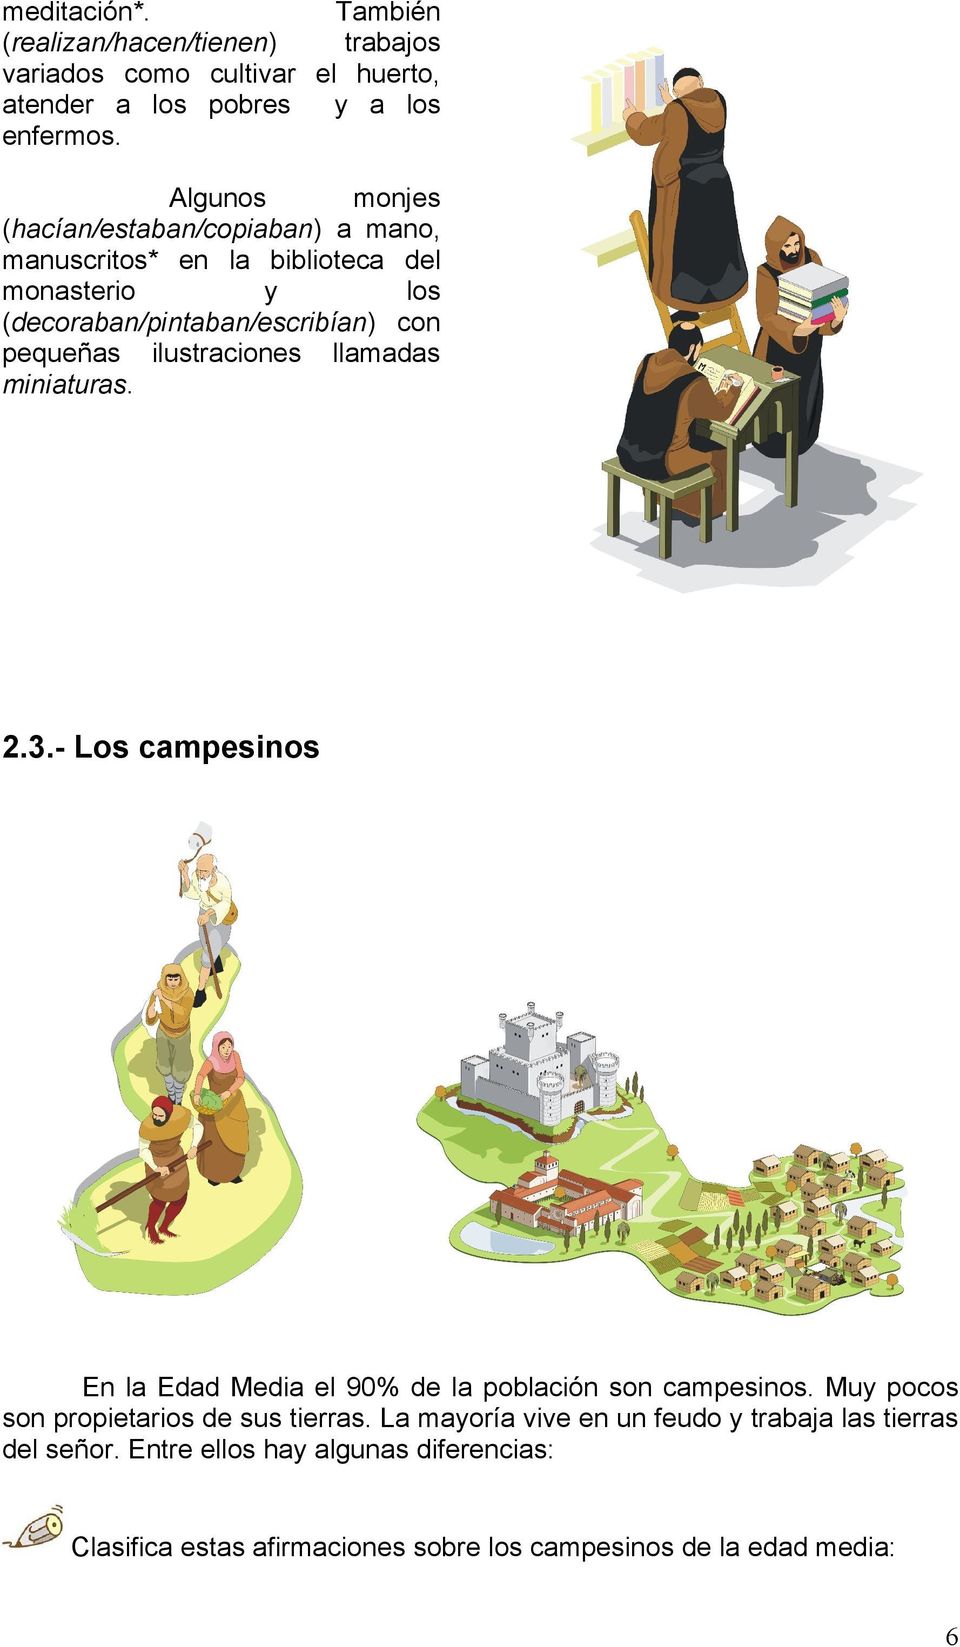 ilustraciones llamadas miniaturas. 2.3.- Los campesinos En la Edad Media el 90% de la población son campesinos.